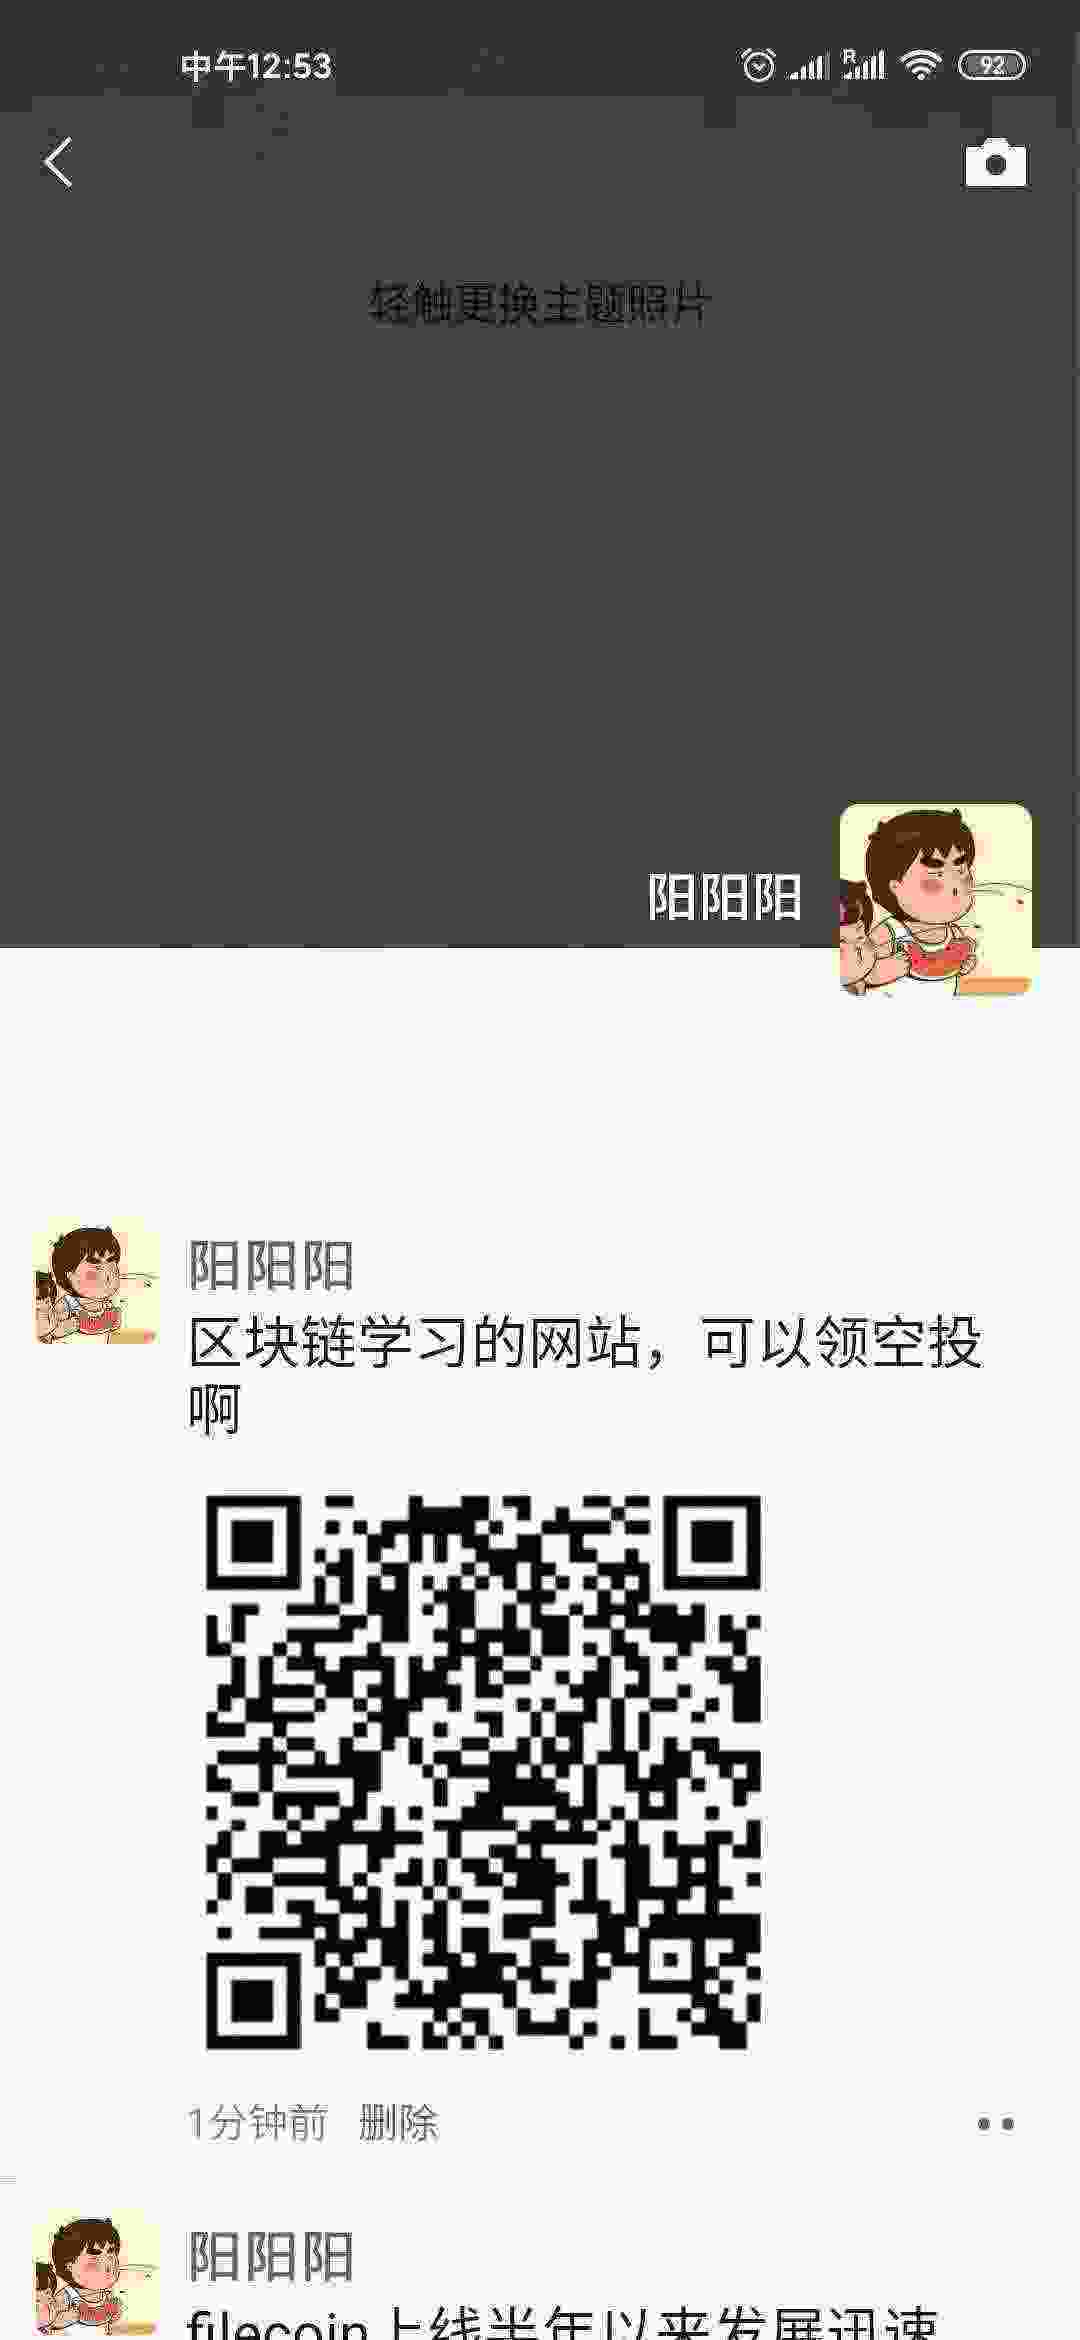 WeChat Image_20210305125318.jpg